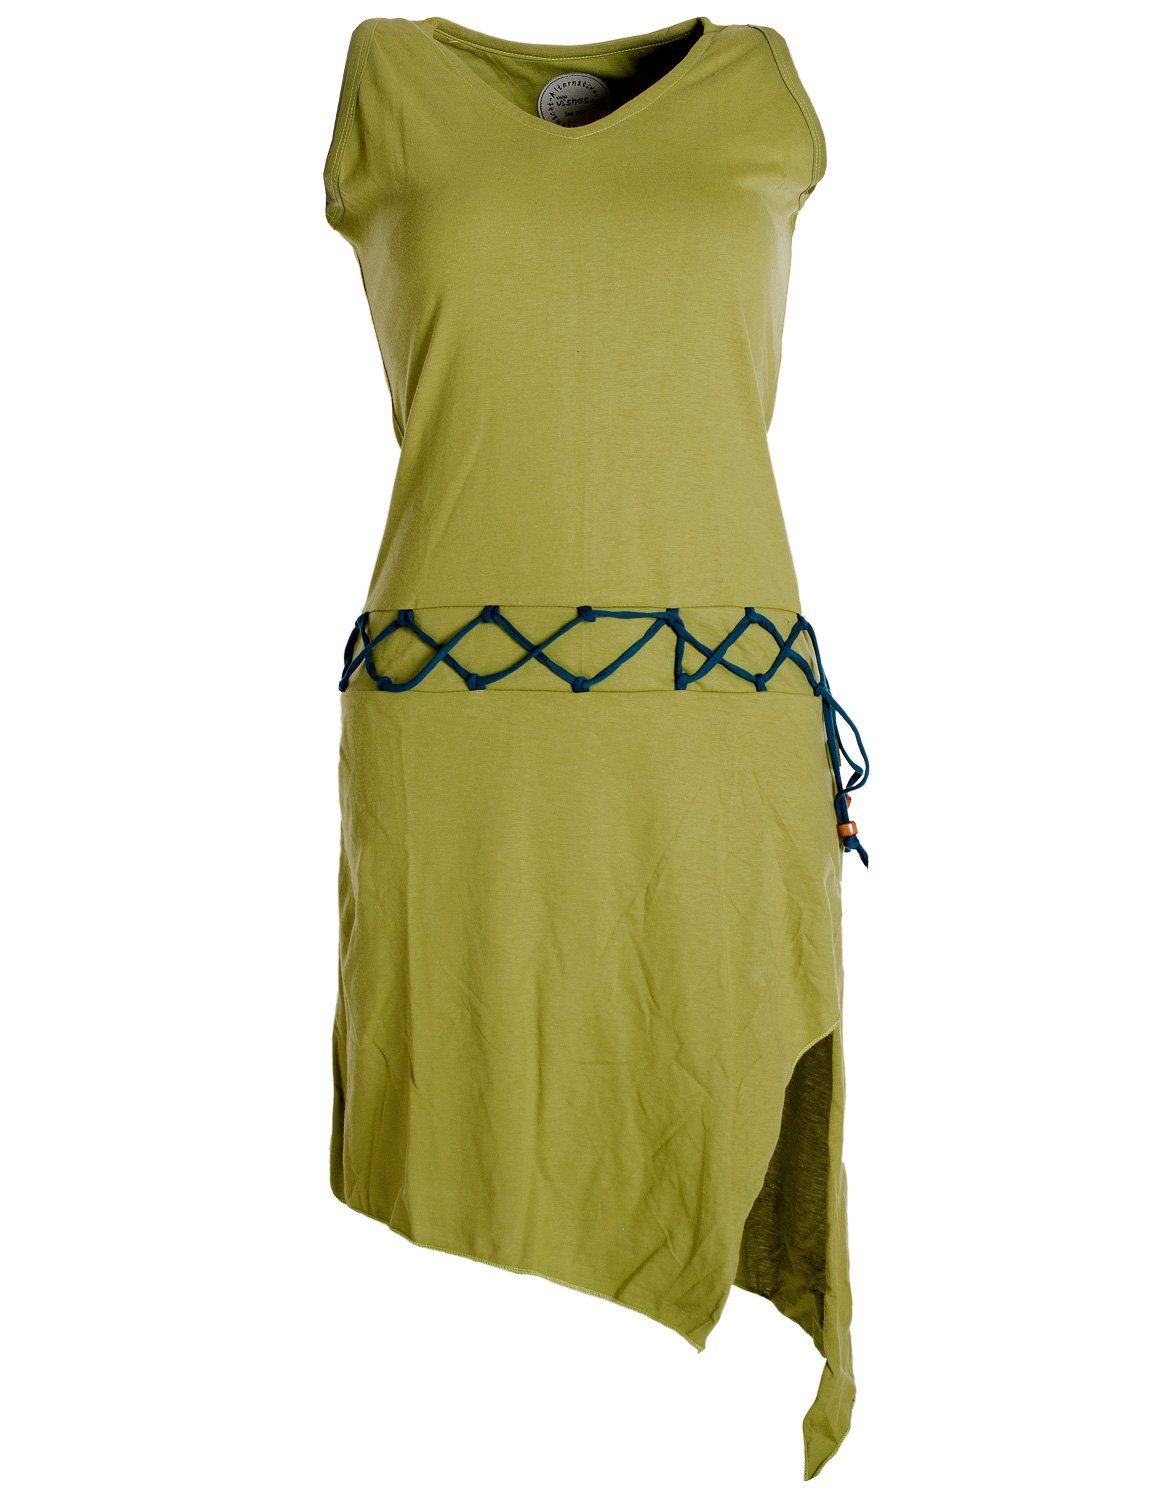 Vishes Sommerkleid Ärmelloses Kleid asymmetrisch Beinausschnitt Gürtel-Schnürung Hippie, Boho, Goa Elfen Style hellgrün